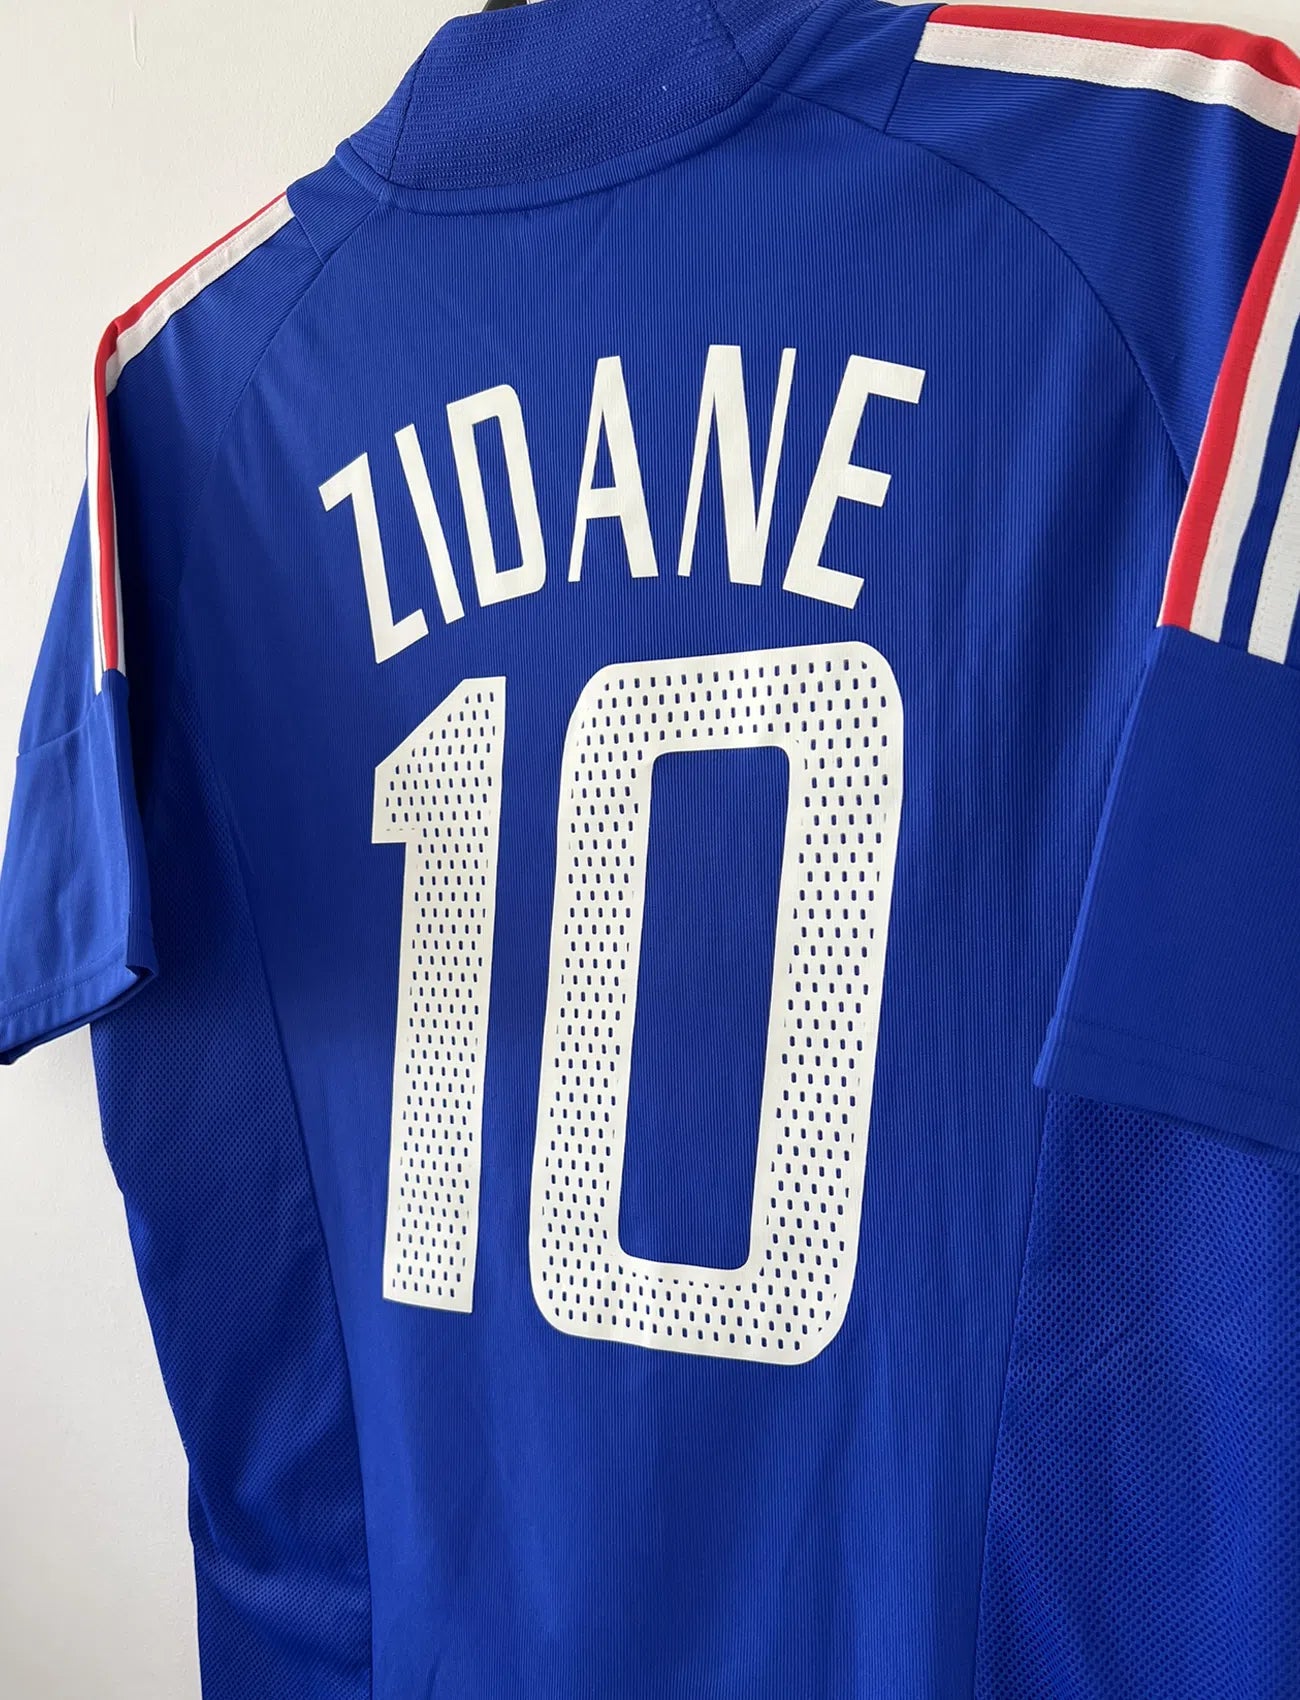 Maillot de foot vintage domicile de l'Equipe de France 2002. Le maillot est de couleur bleu, blanc et rouge. On peut retrouver l'équipementier adidas et le flocage de Zinedine Zidane. Il s'agit d'un maillot authentique. Le maillot possède l'étiquette d'authenticité comportant les numéros 139531.